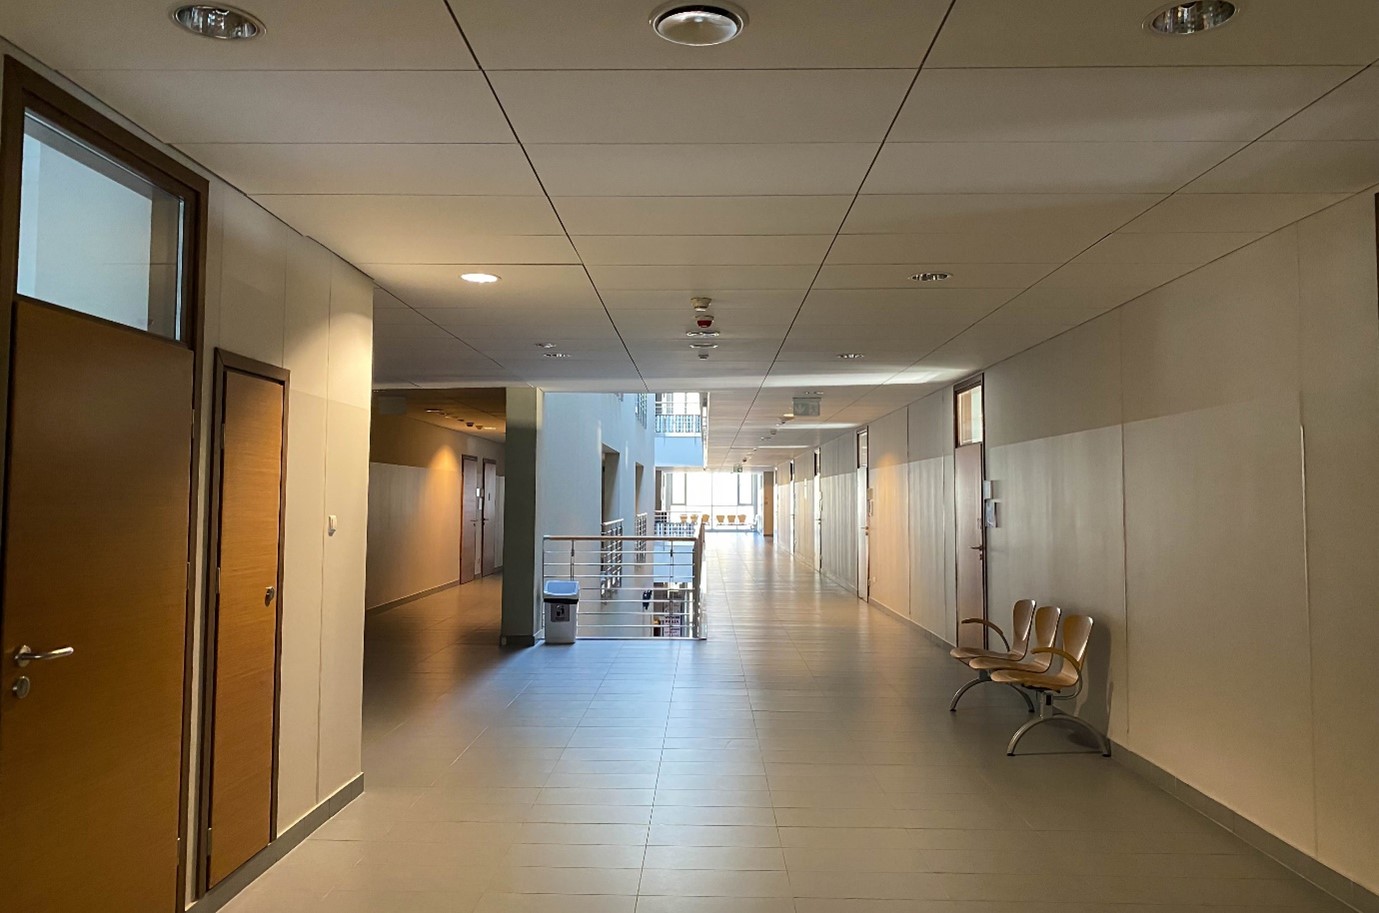 Część korytarza budynku wydziału. Na środku rozdzielenie na dwie części - z lewej sale 1.113, 1.112, 1.111,  po środku pusta przestrzeń oddzielona barierkami i ścianami, nad którą znajduje się świetlik, po prawej drzwi do innych sal.